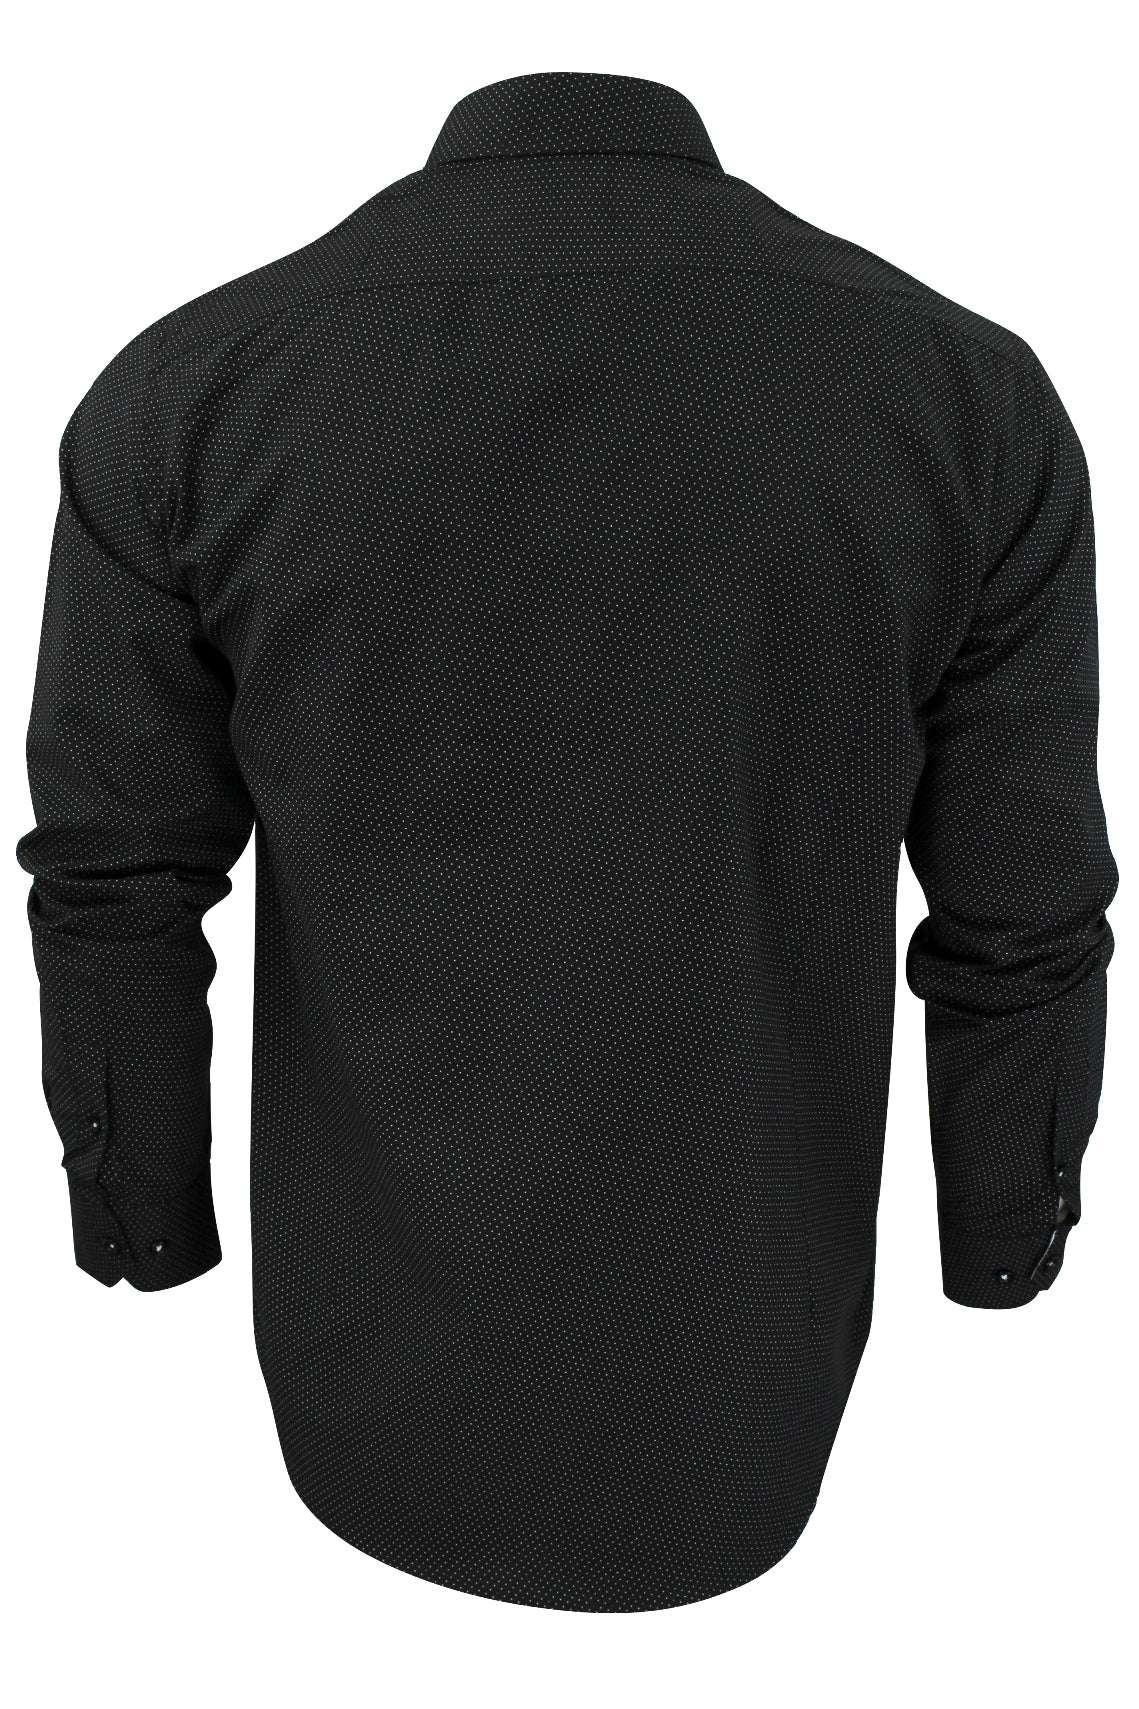 Mens Long Sleeved Shirt by Xact Clothing Mini Polka Dot, 03, 1510121, Black